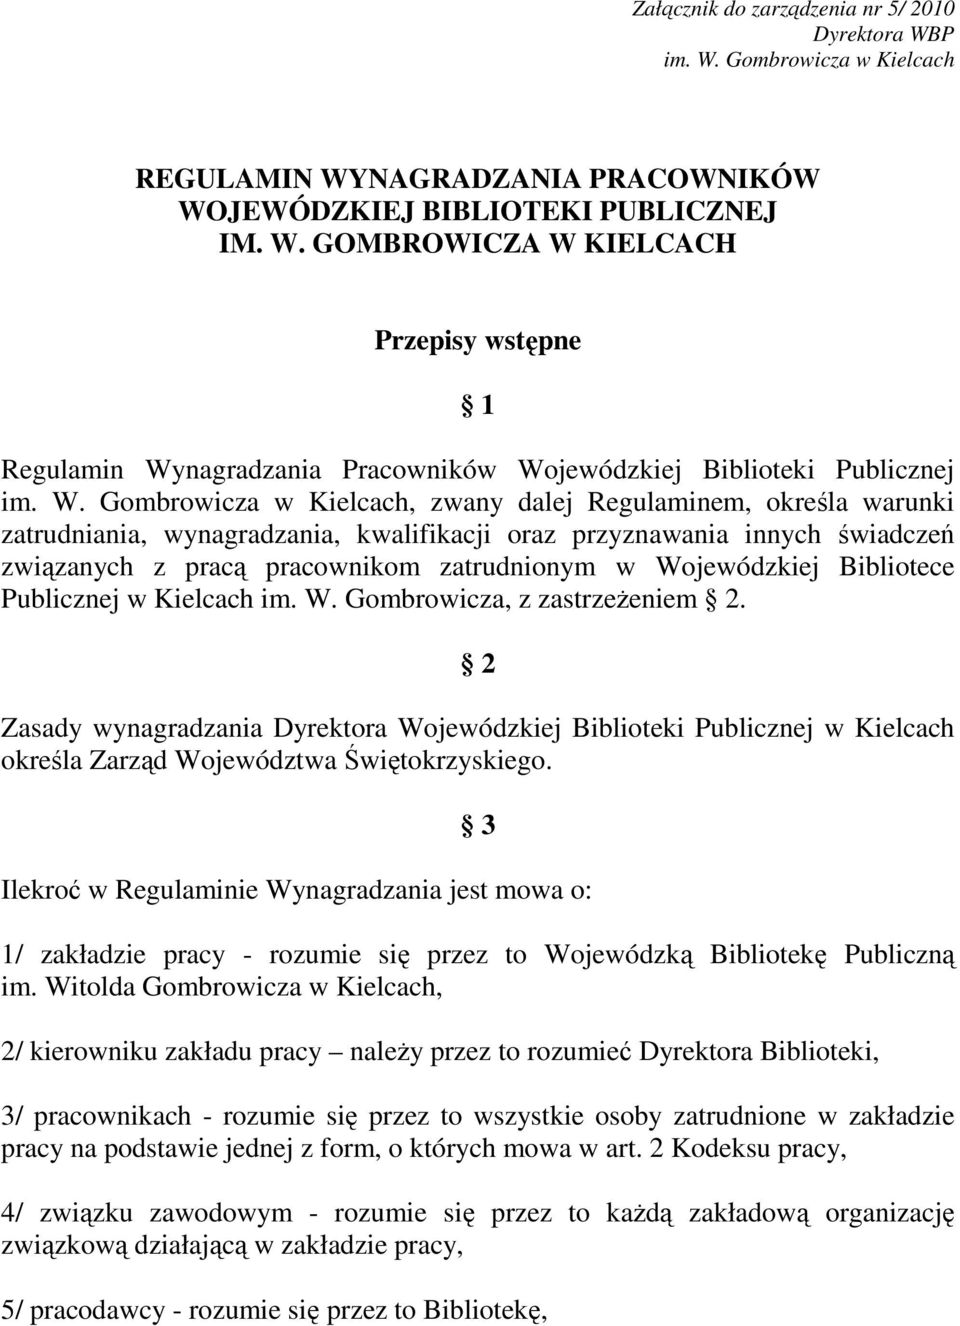 Wojewódzkiej Bibliotece Publicznej w Kielcach im. W. Gombrowicza, z zastrzeŝeniem 2.